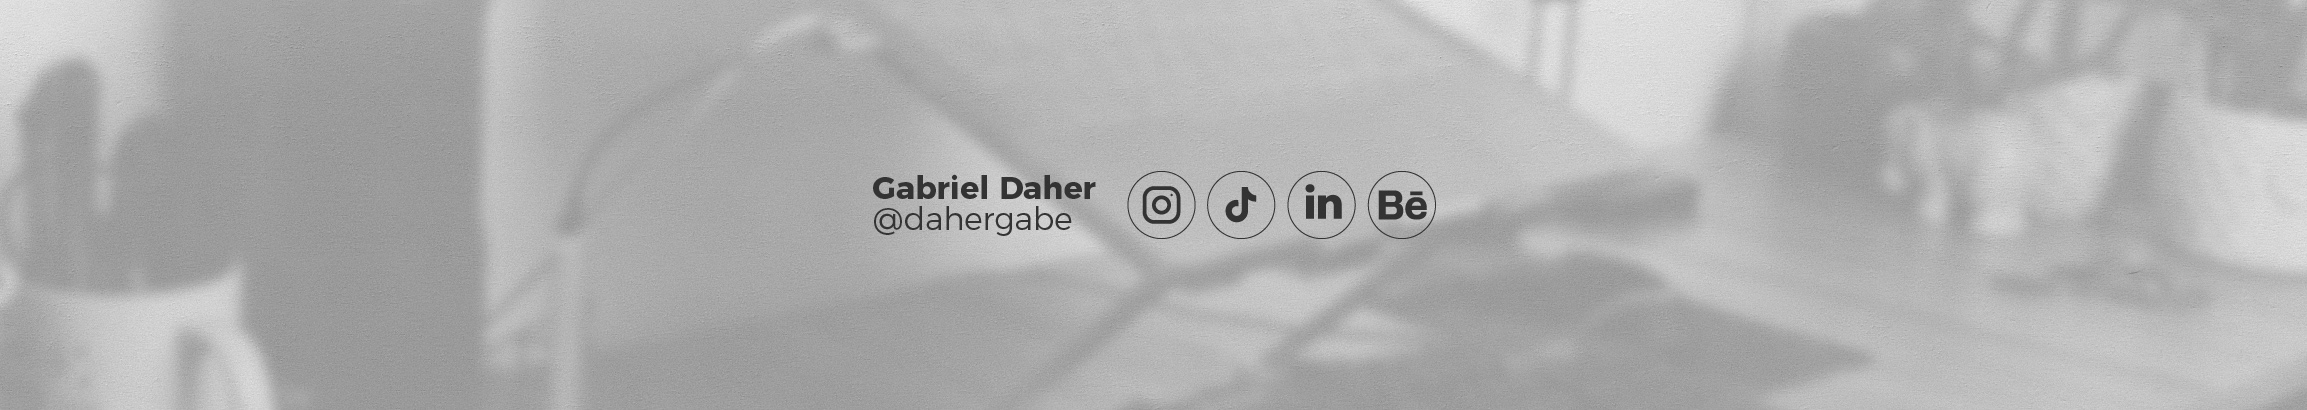 Gabriel Daher's profile banner